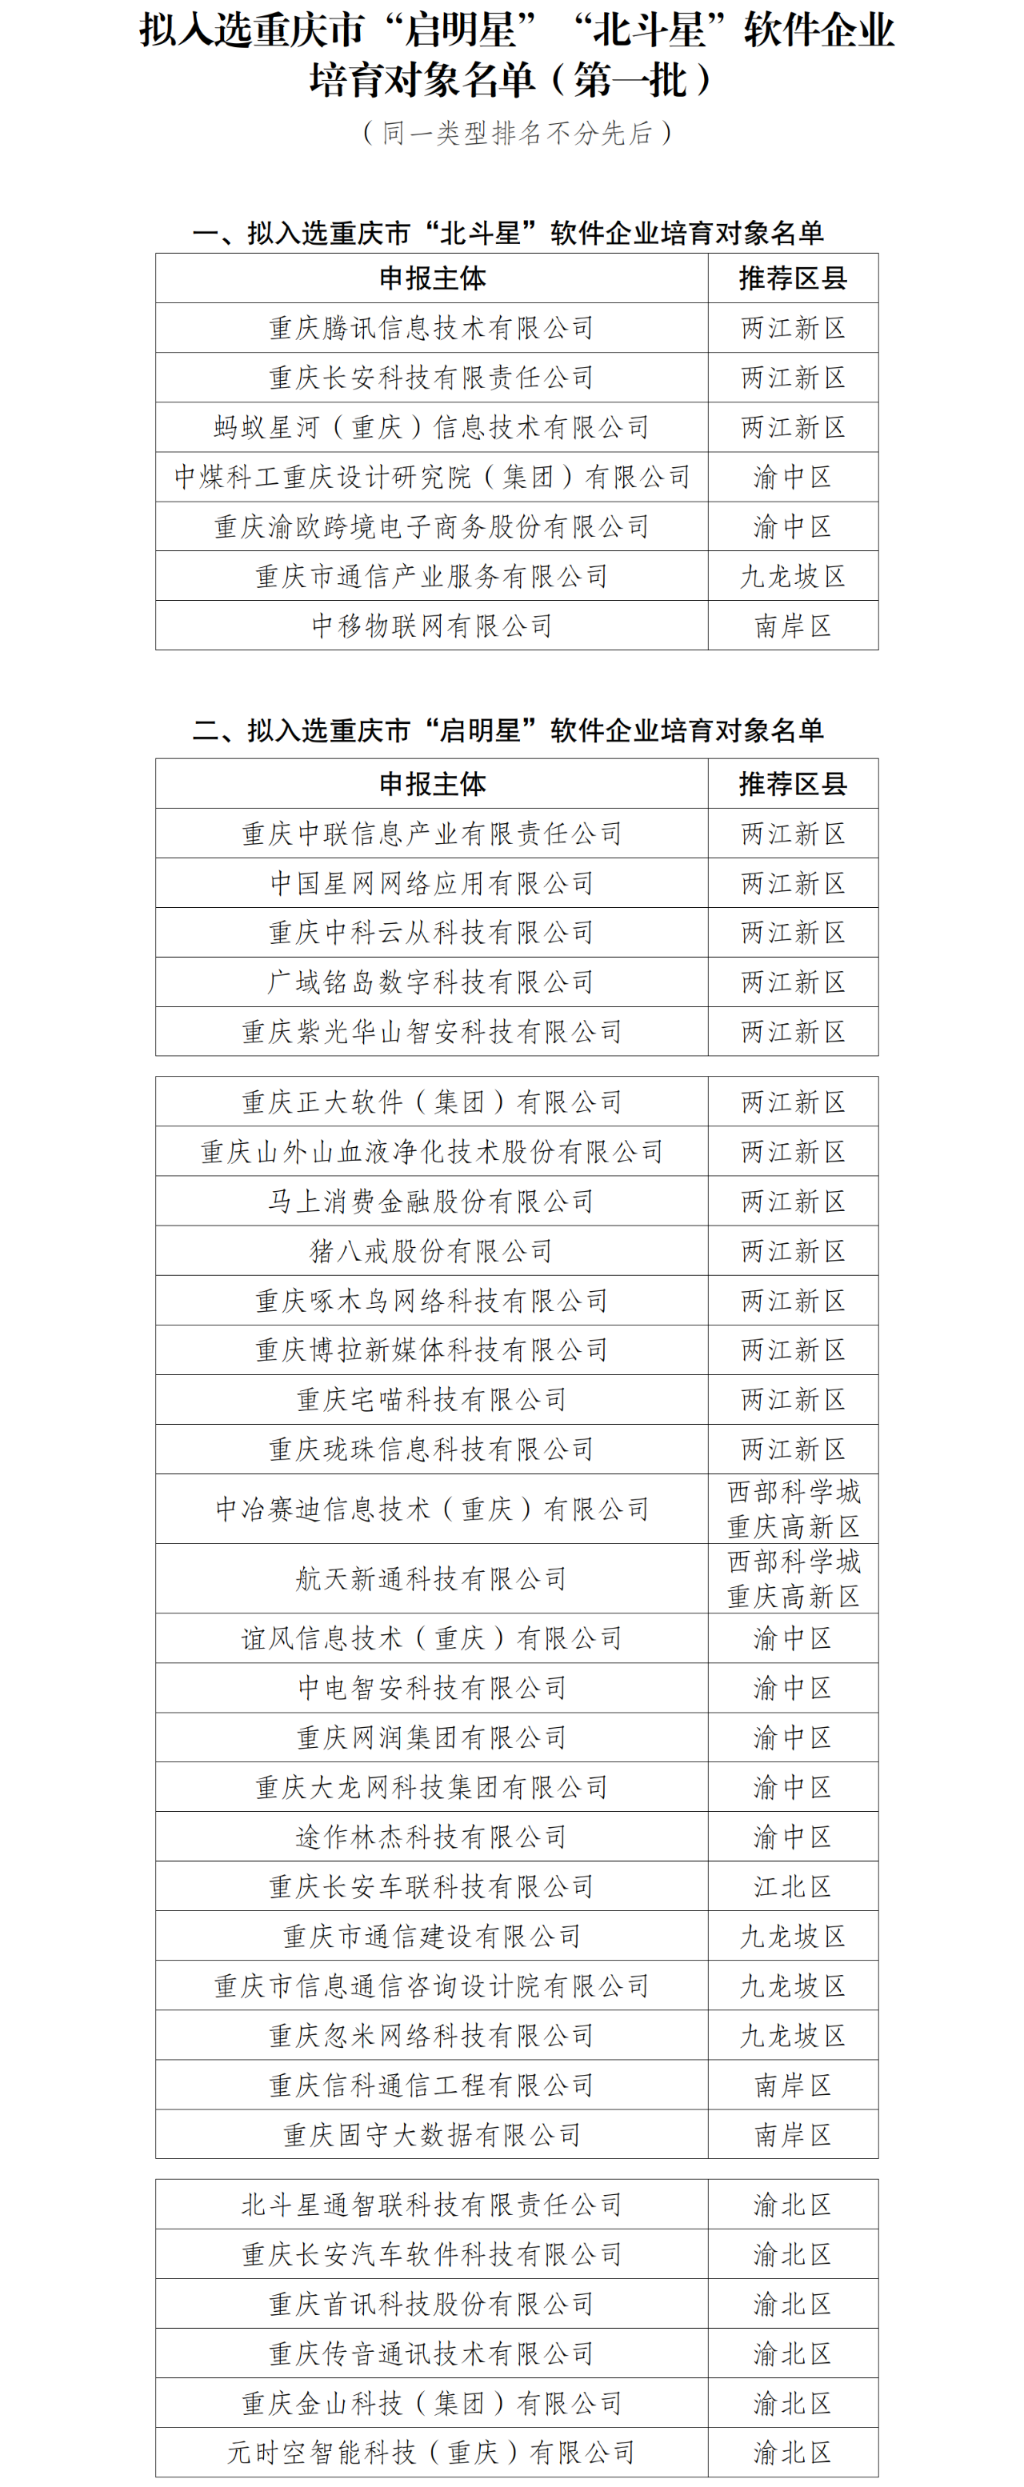 拟入选重庆市“启明星”“北斗星”软件企业培育对象名单（第一批）。